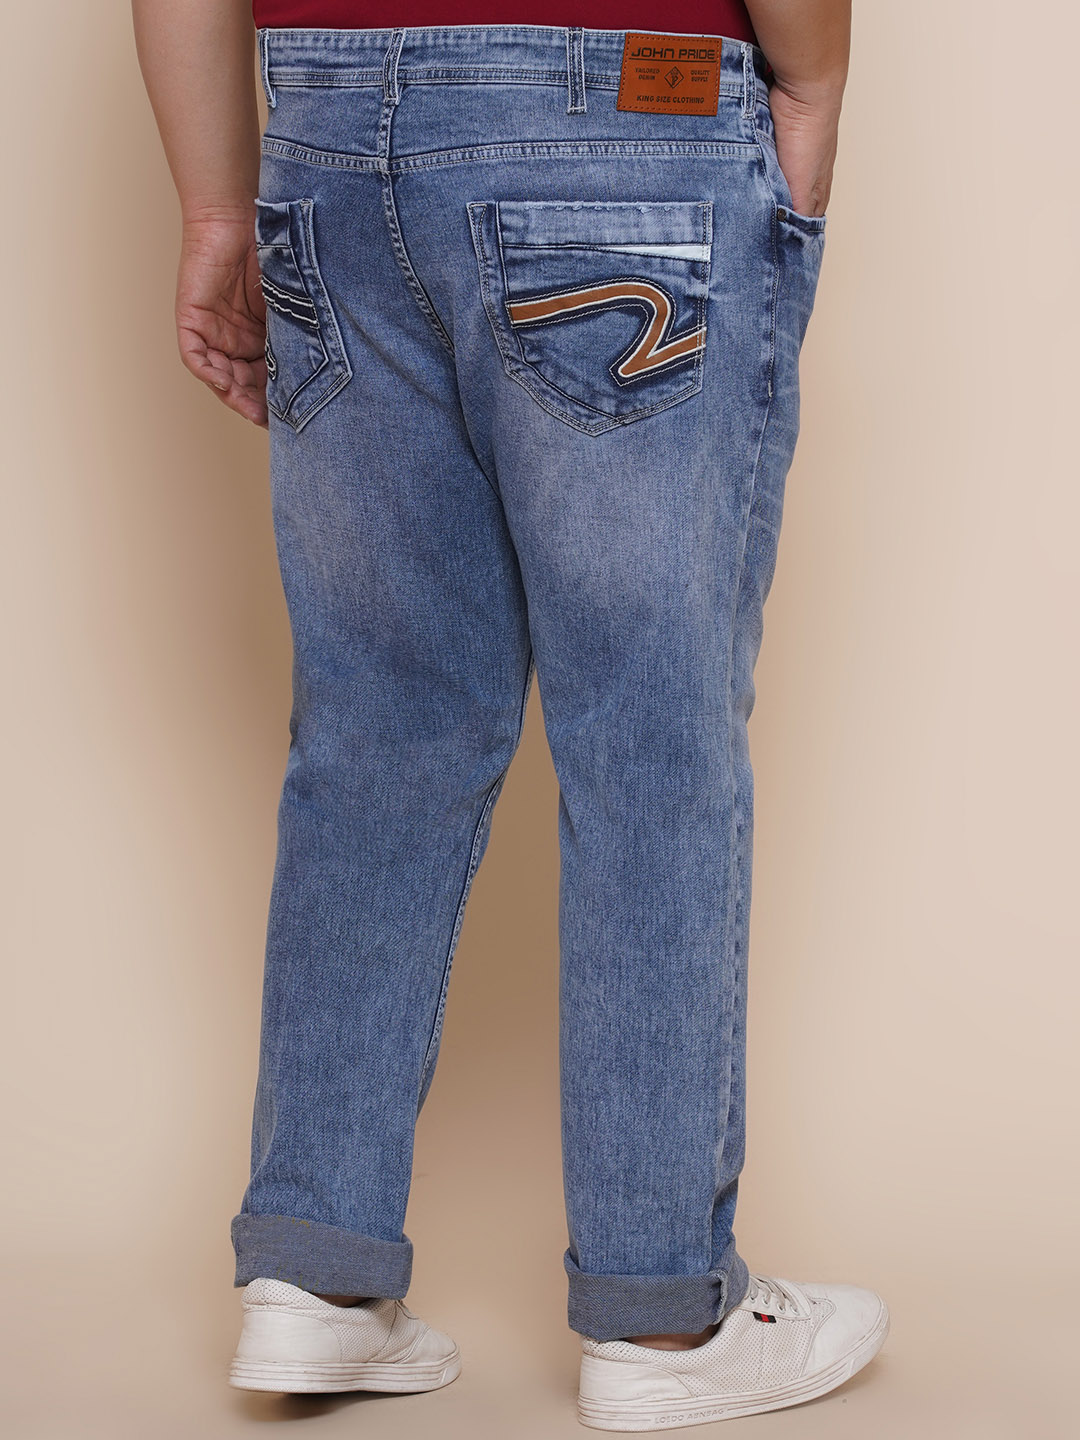 bottomwear/jeans/JPJ27001/jpj27001-5.jpg